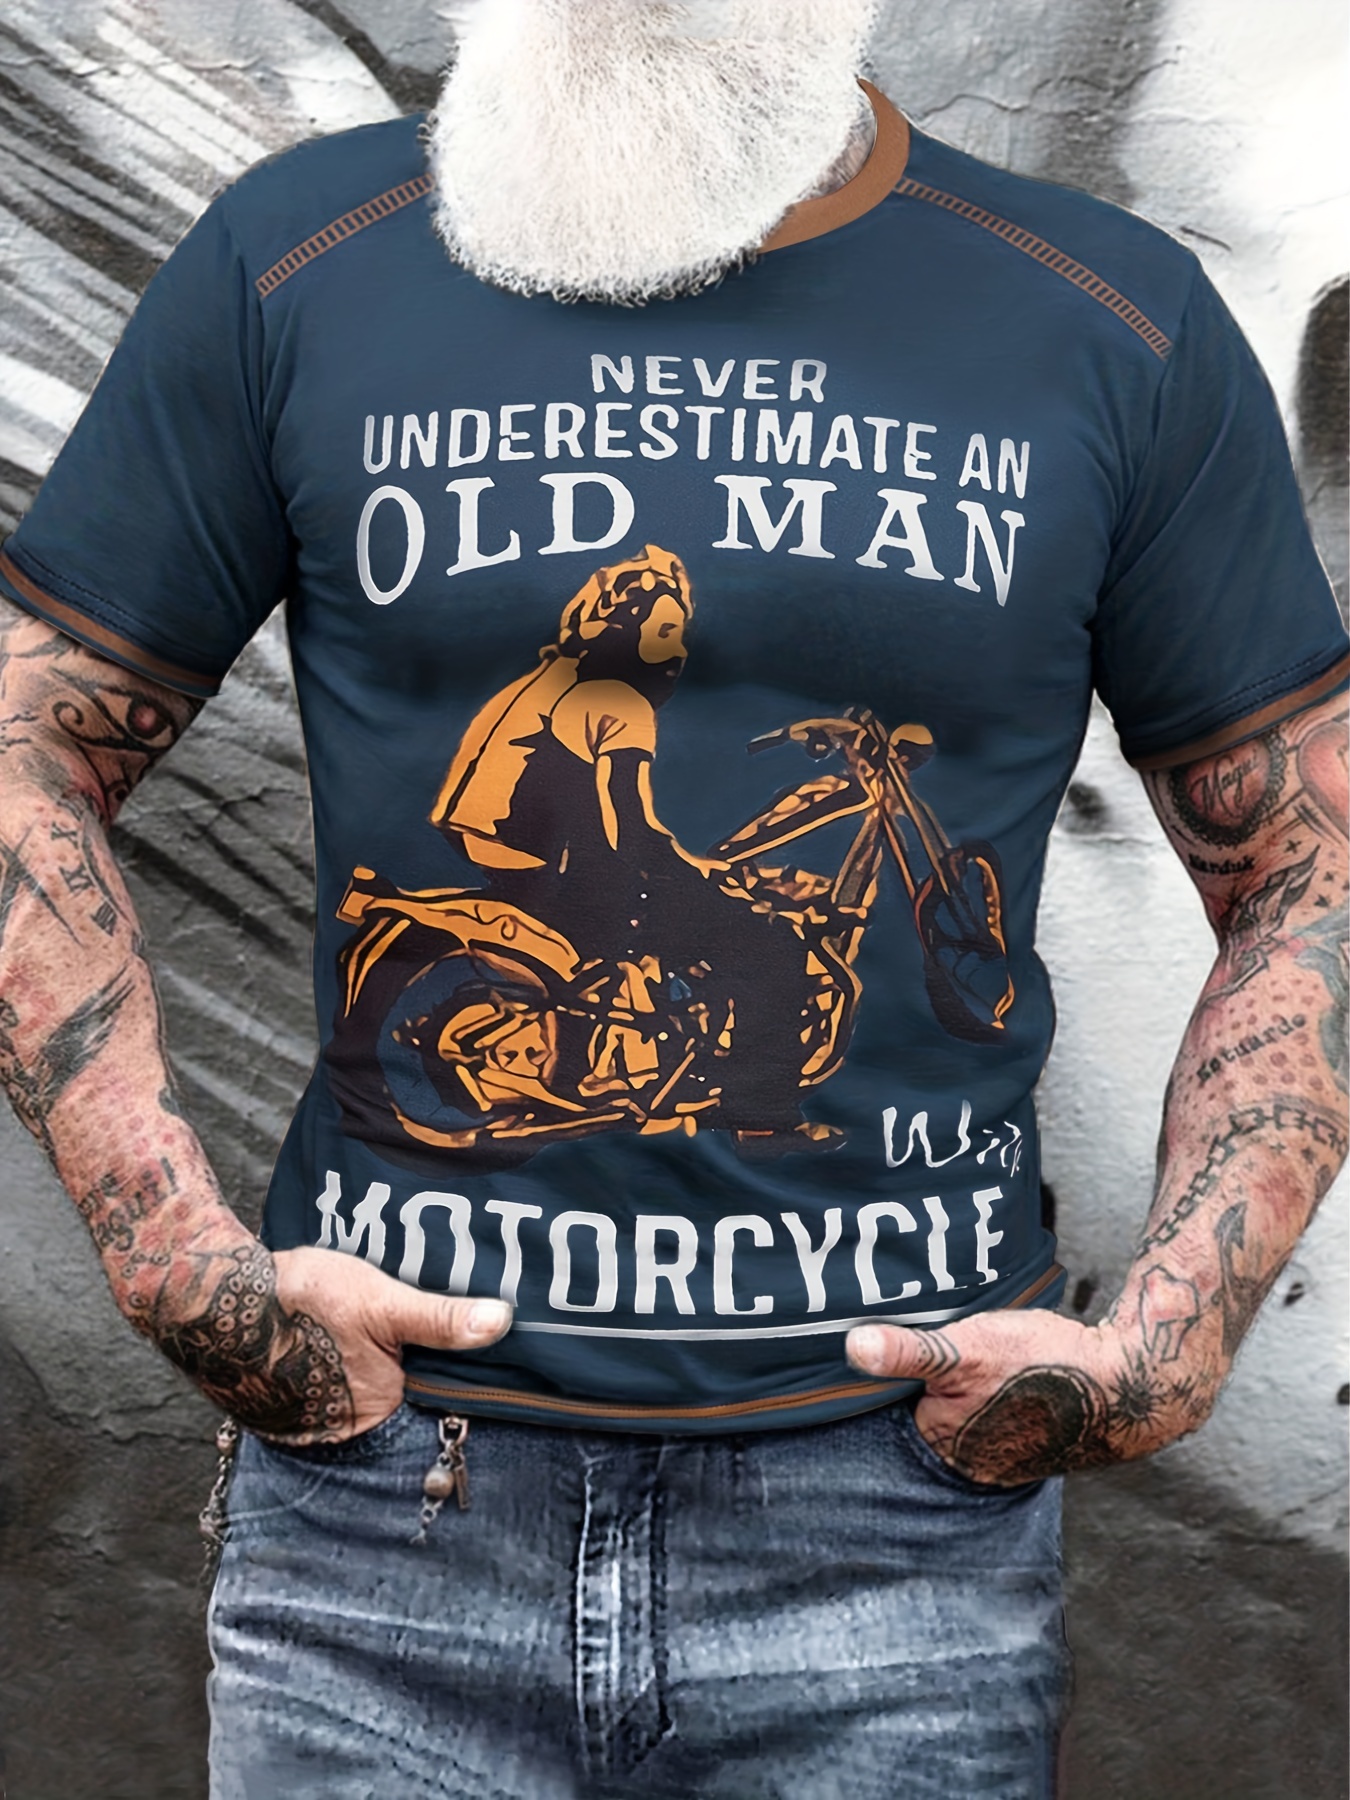 Never Motorcycle Ne Sous Estimez Jamais Un Vieil Homme Avec Une